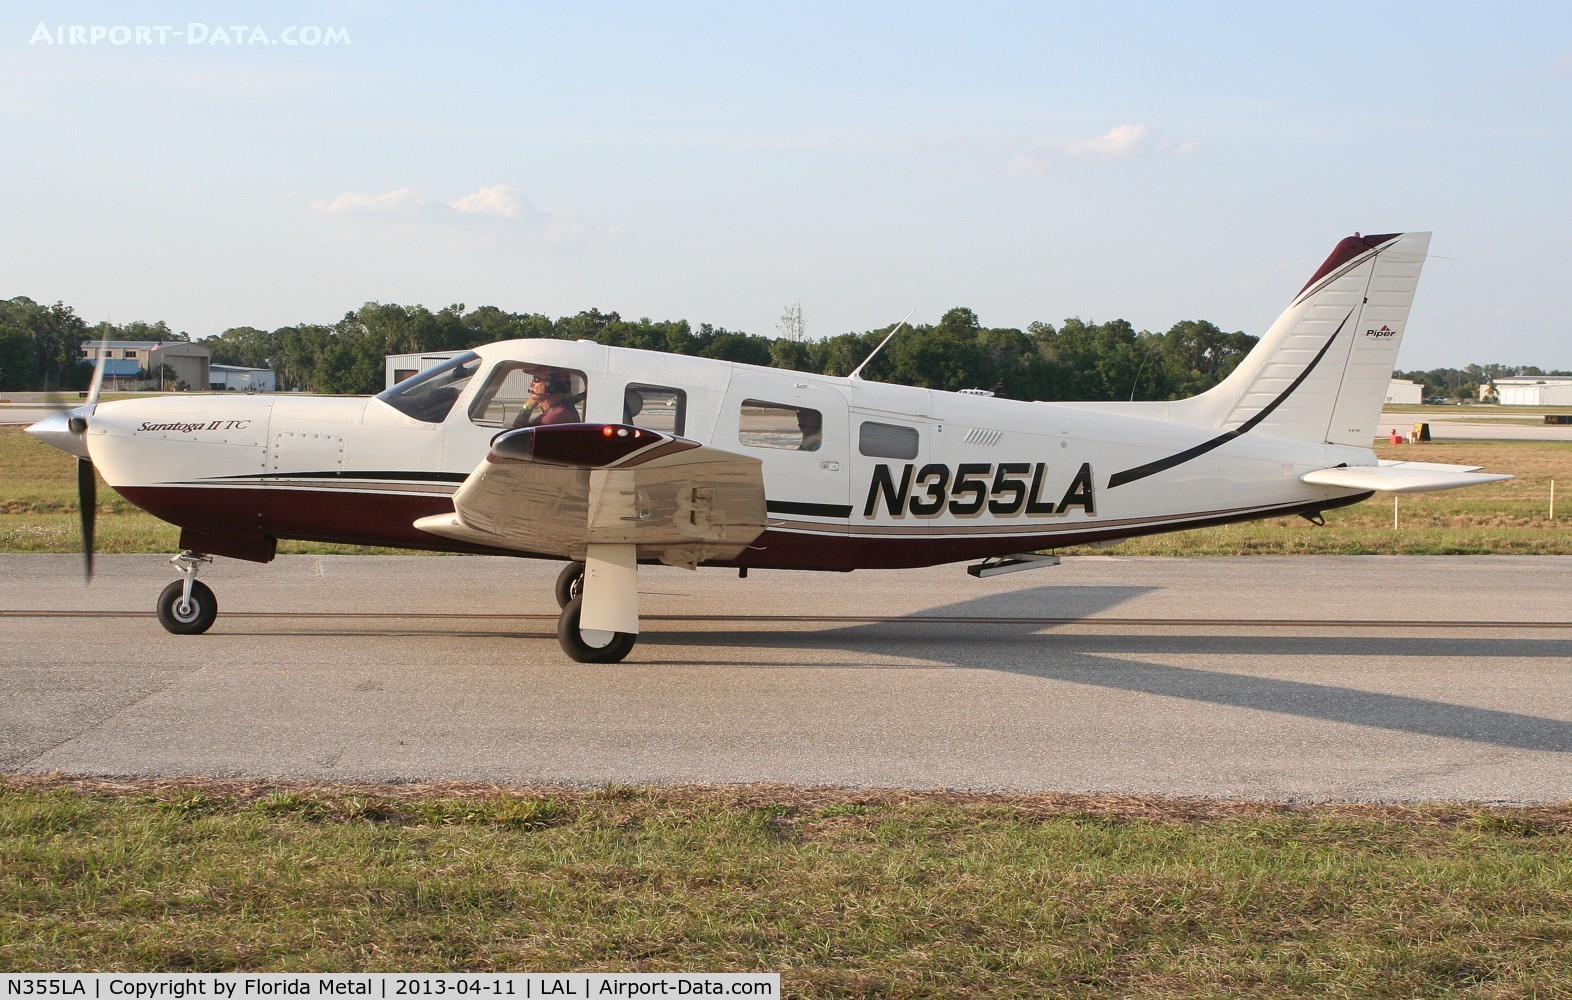 N355LA, 2007 Piper PA-32R-301T Turbo Saratoga C/N 3257472, PA-32R-301T